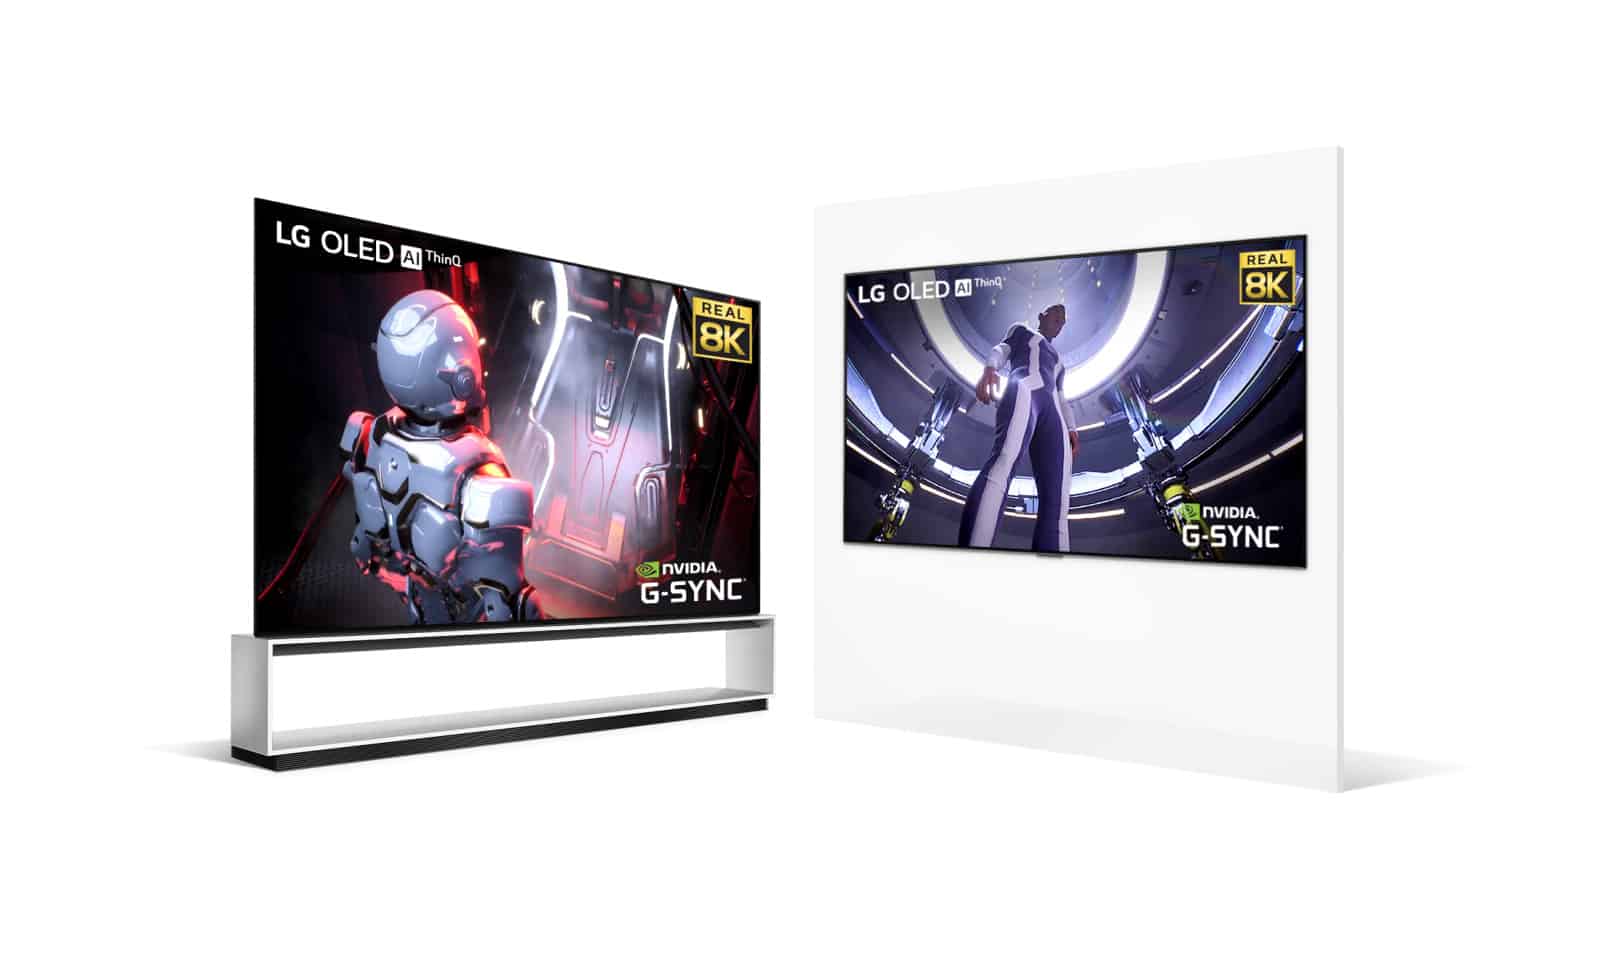 LG добавляет в свои телевизоры поддержку игровых графических процессоров NVIDIA 30 серии